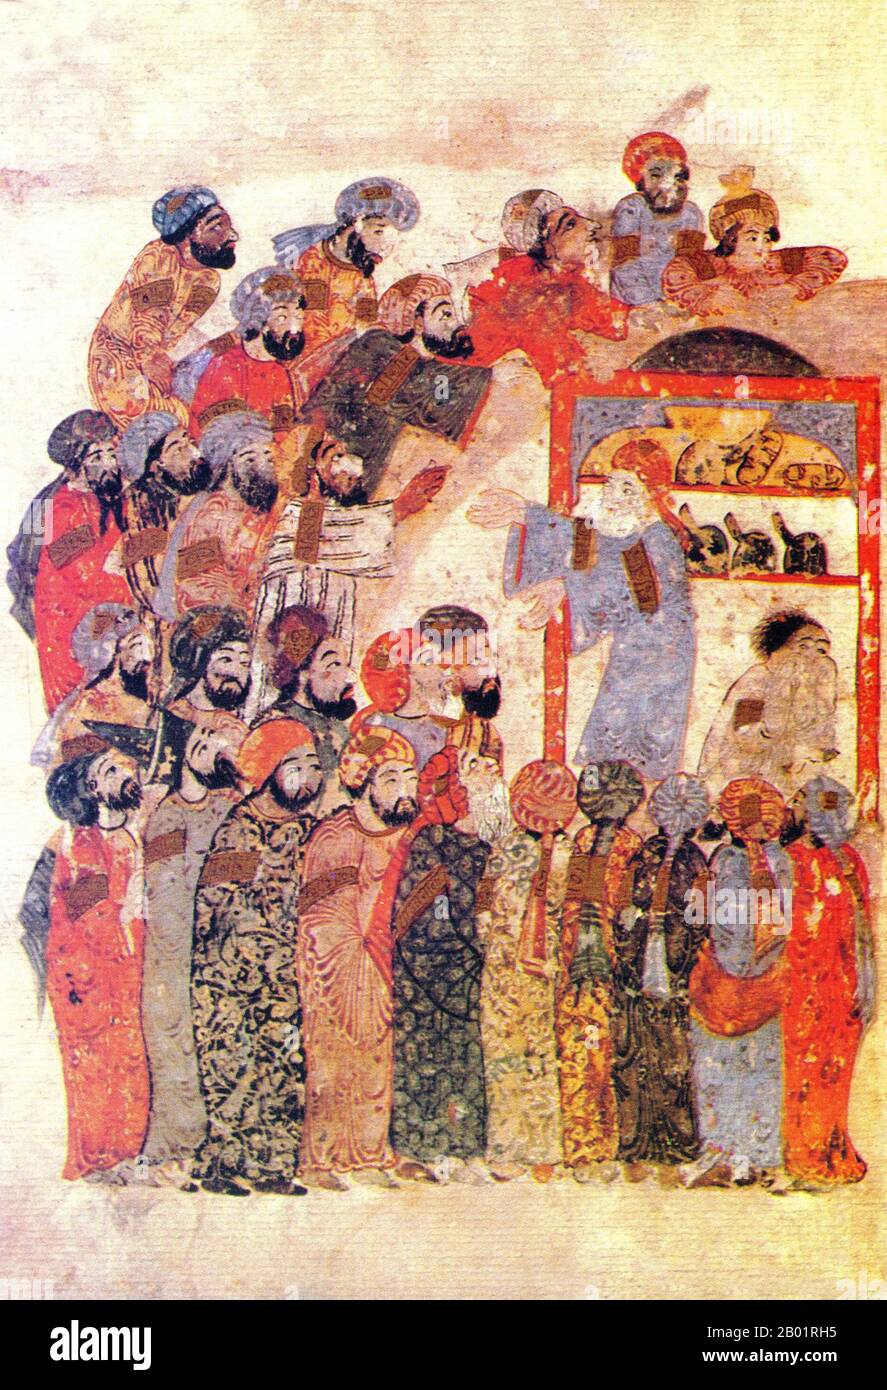 Iraq: Una scena dal "Maqam" o "Assemblea”. Pittura in miniatura di Yahya ibn Mahmud al-Wasiti, 1237 d.C. Yahyâ ibn Mahmûd al-Wâsitî è stato un artista arabo islamico del XIII secolo. Al-Wasiti è nato a Wasit, nel sud dell'Iraq. Era noto per le sue illustrazioni del Maqam di al-Hariri. I Maqāma (letteralmente "assemblee") sono un genere letterario arabo (originariamente) di prosa rimata con intervalli di poesia in cui la stravaganza retorica è evidente. Si dice che l'autore del X secolo Badī' al-Zaman al-Hamadhāni abbia inventato la forma, che fu estesa da al-Hariri di Bassora nel secolo successivo. Foto Stock